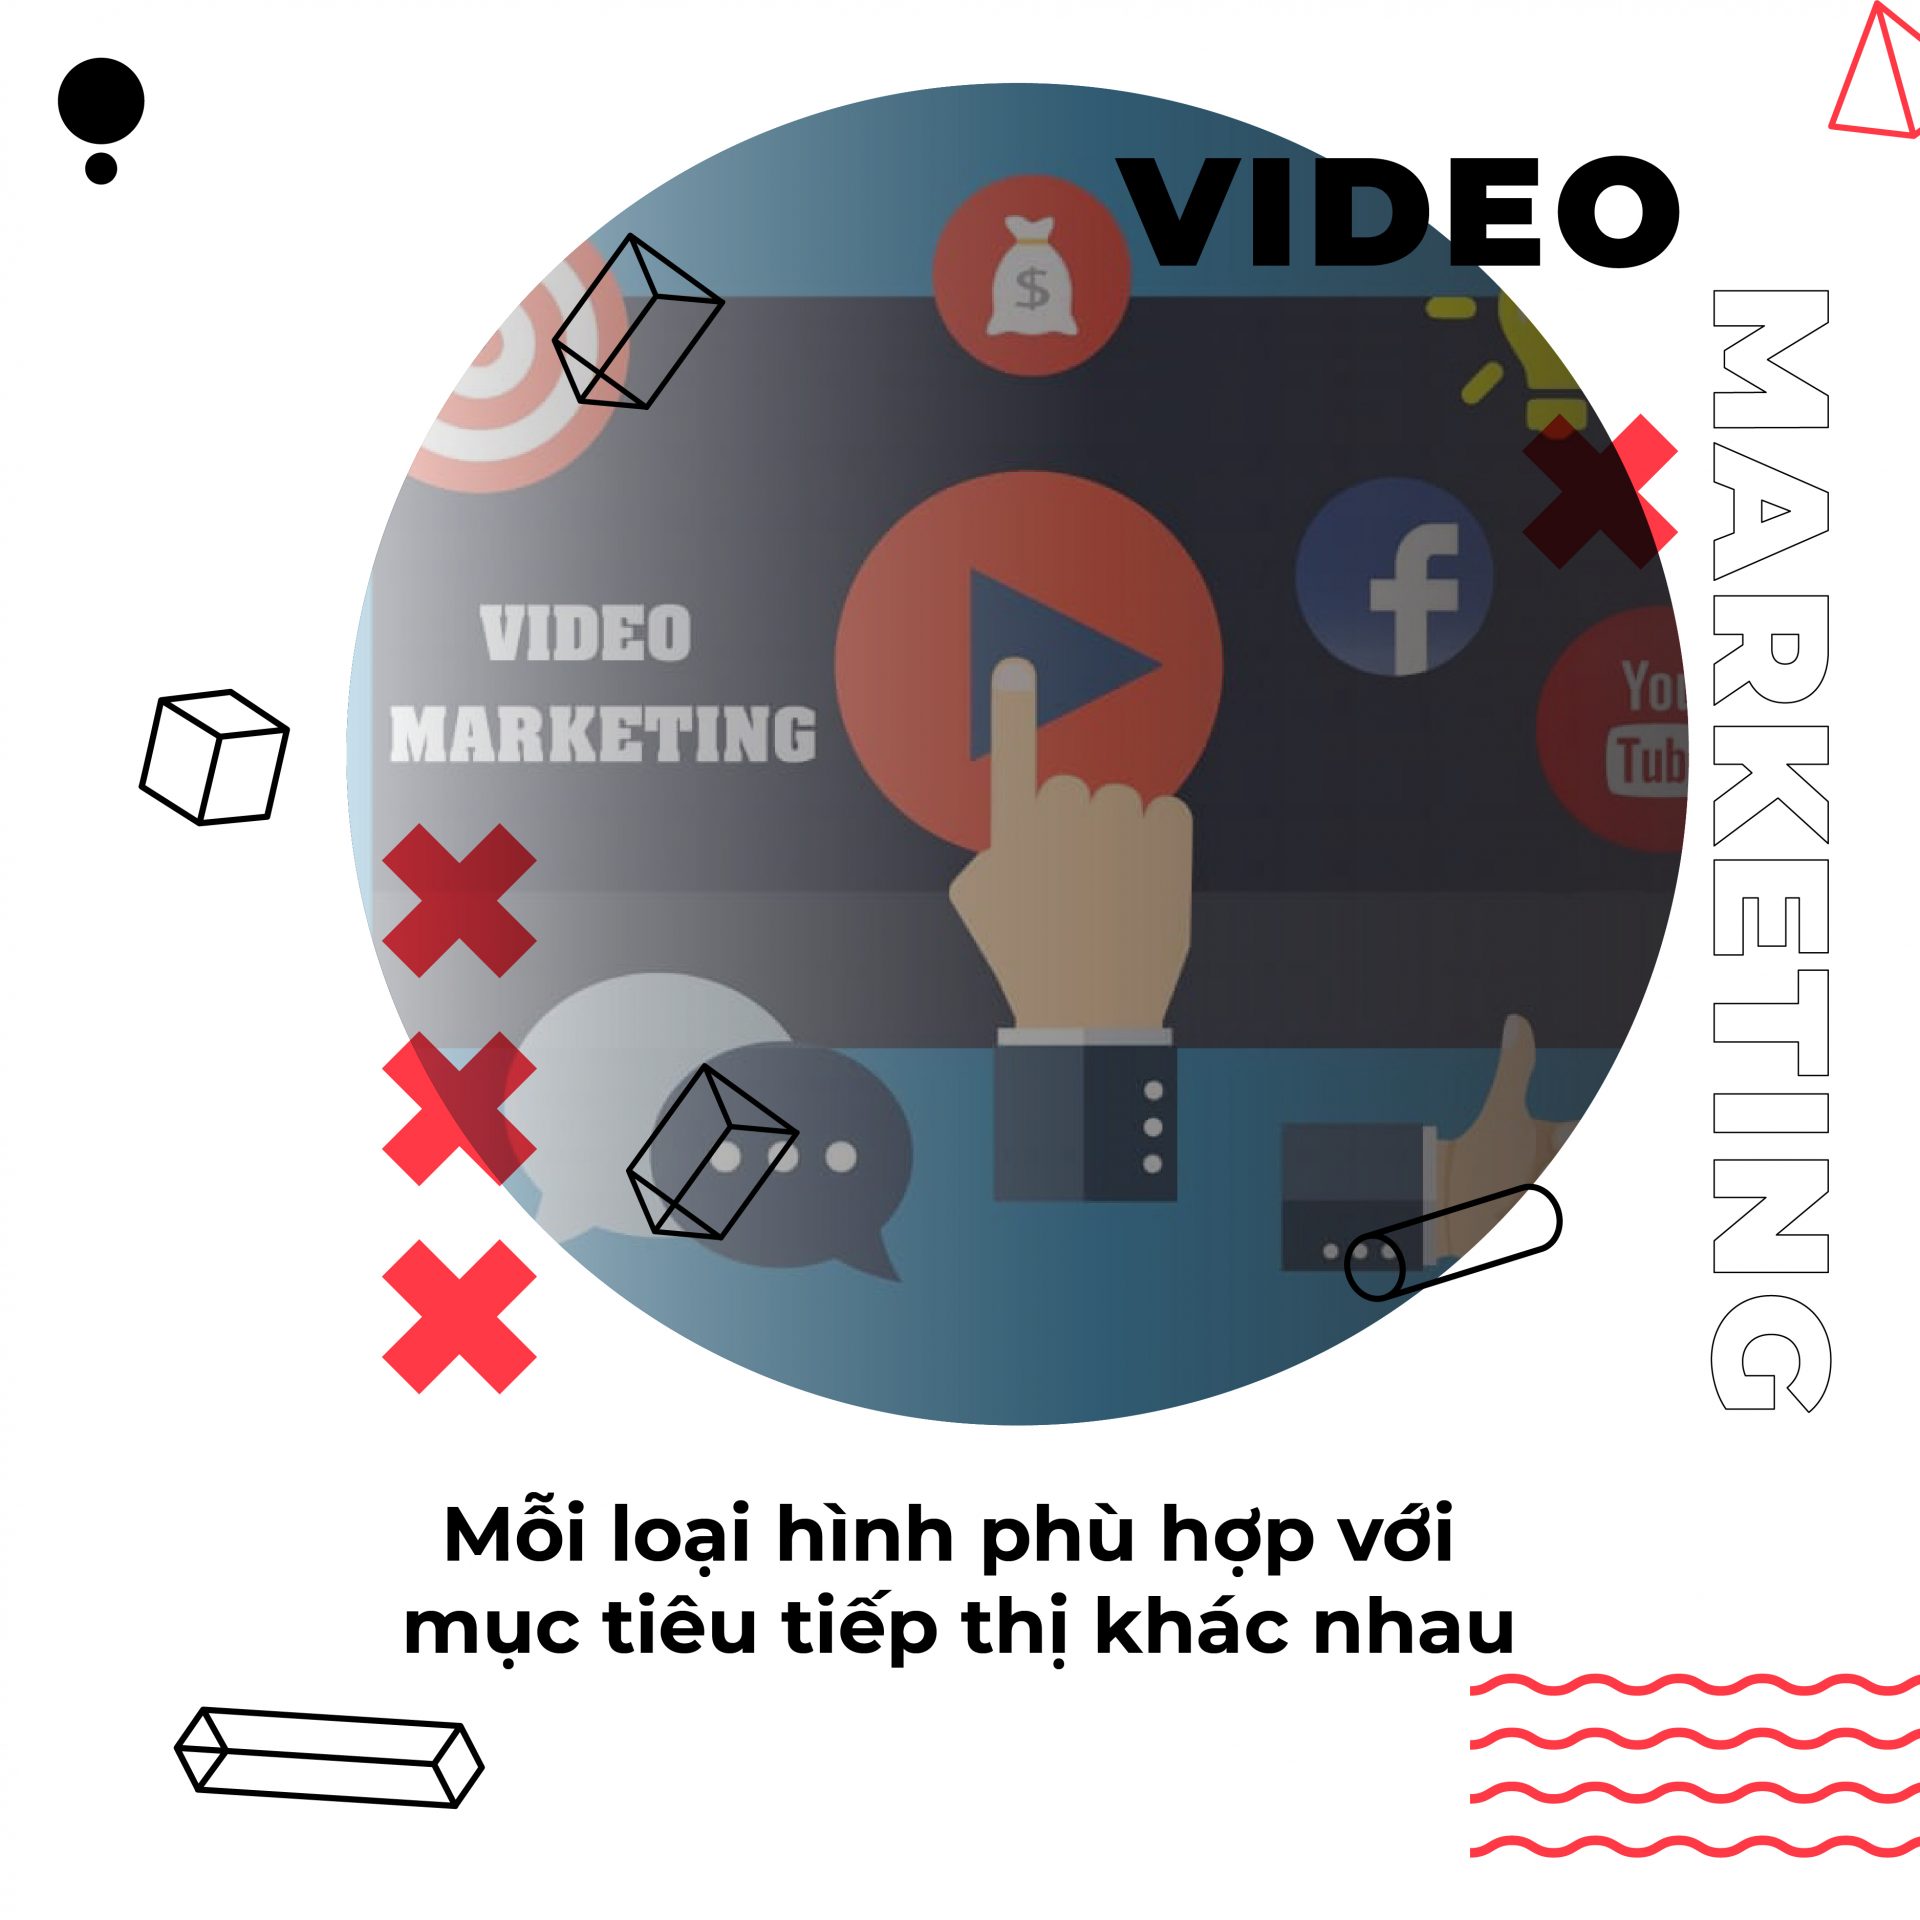 Video Marketing là gì? Công dụng trong hoạt động doanh nghiệp